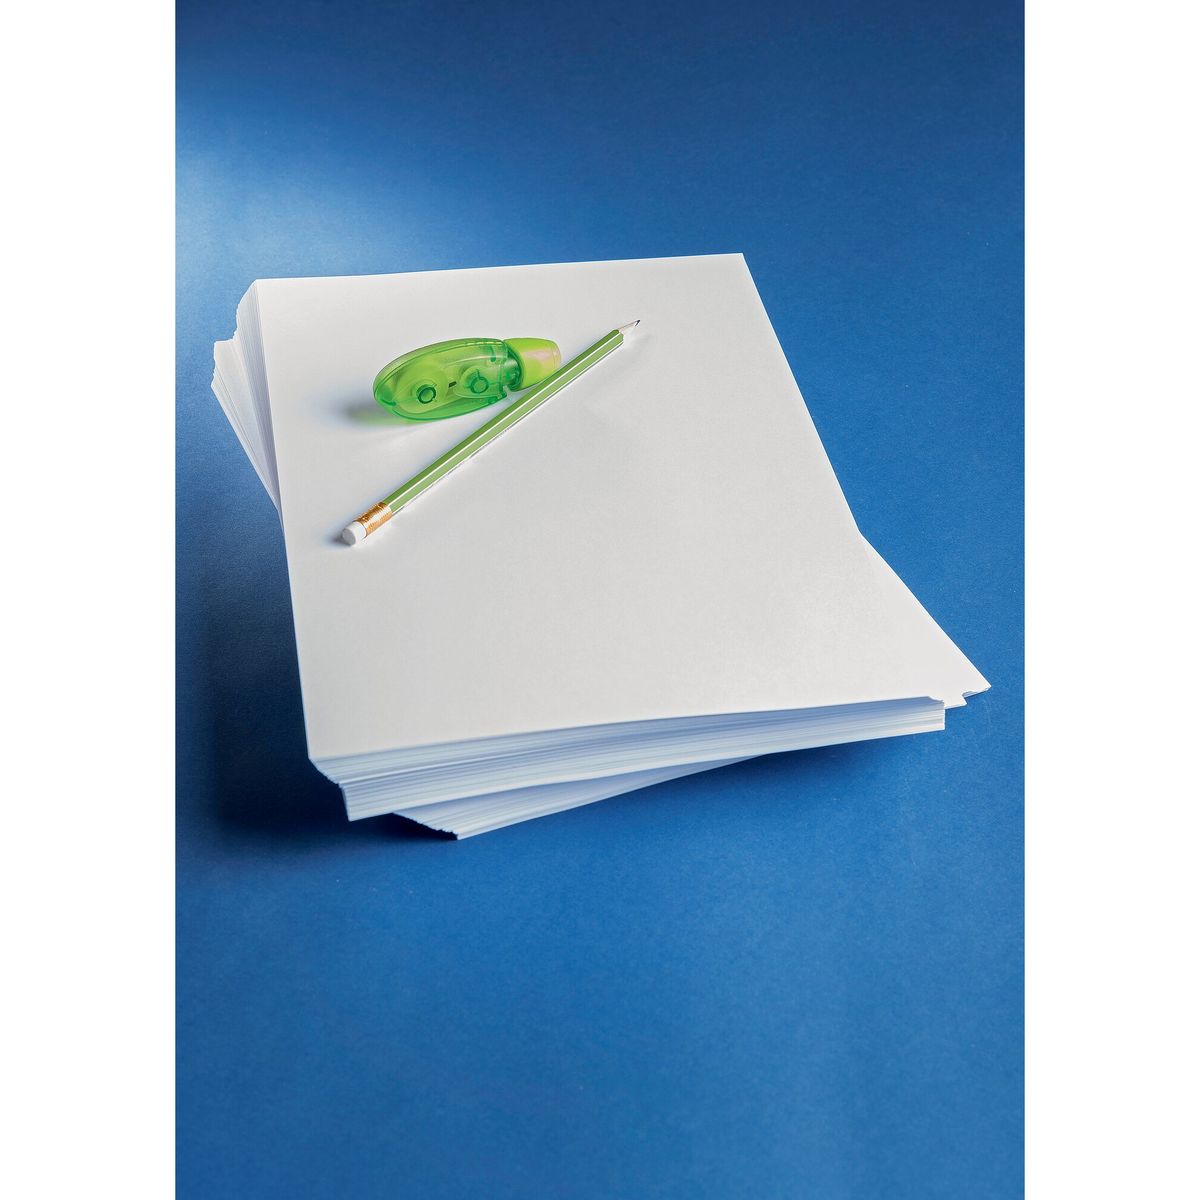 Carrefour Papier voor inkjetprinter 500 vellen A4  80G